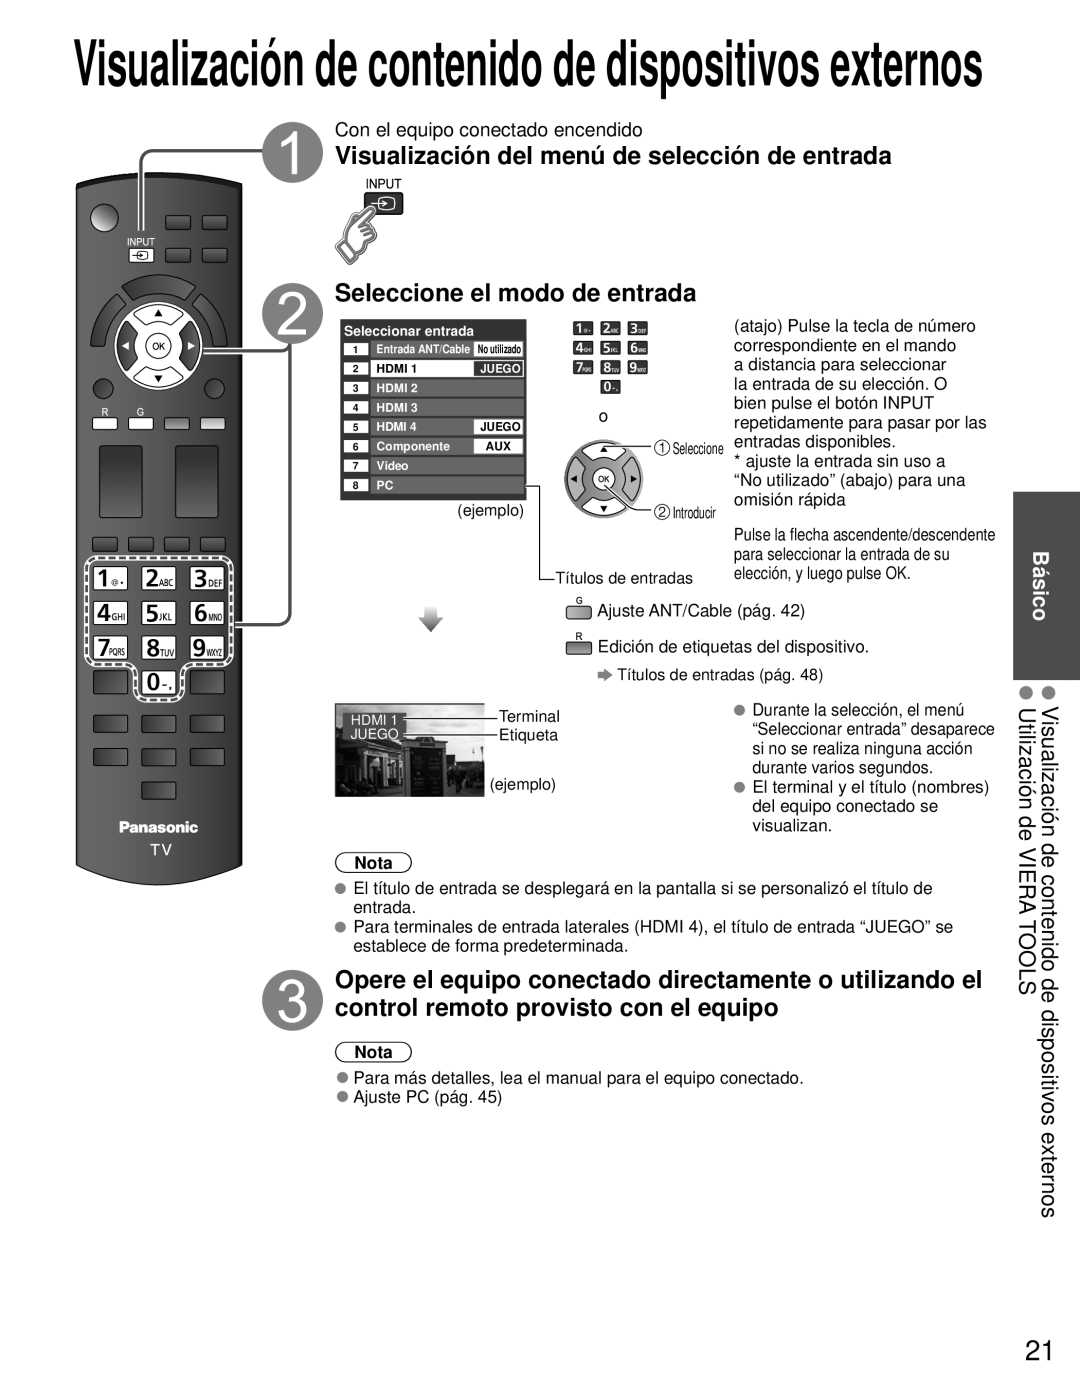 Panasonic TC-L42E3 owner manual Visualización del menú de selección de entrada, Seleccione el modo de entrada, Nota 